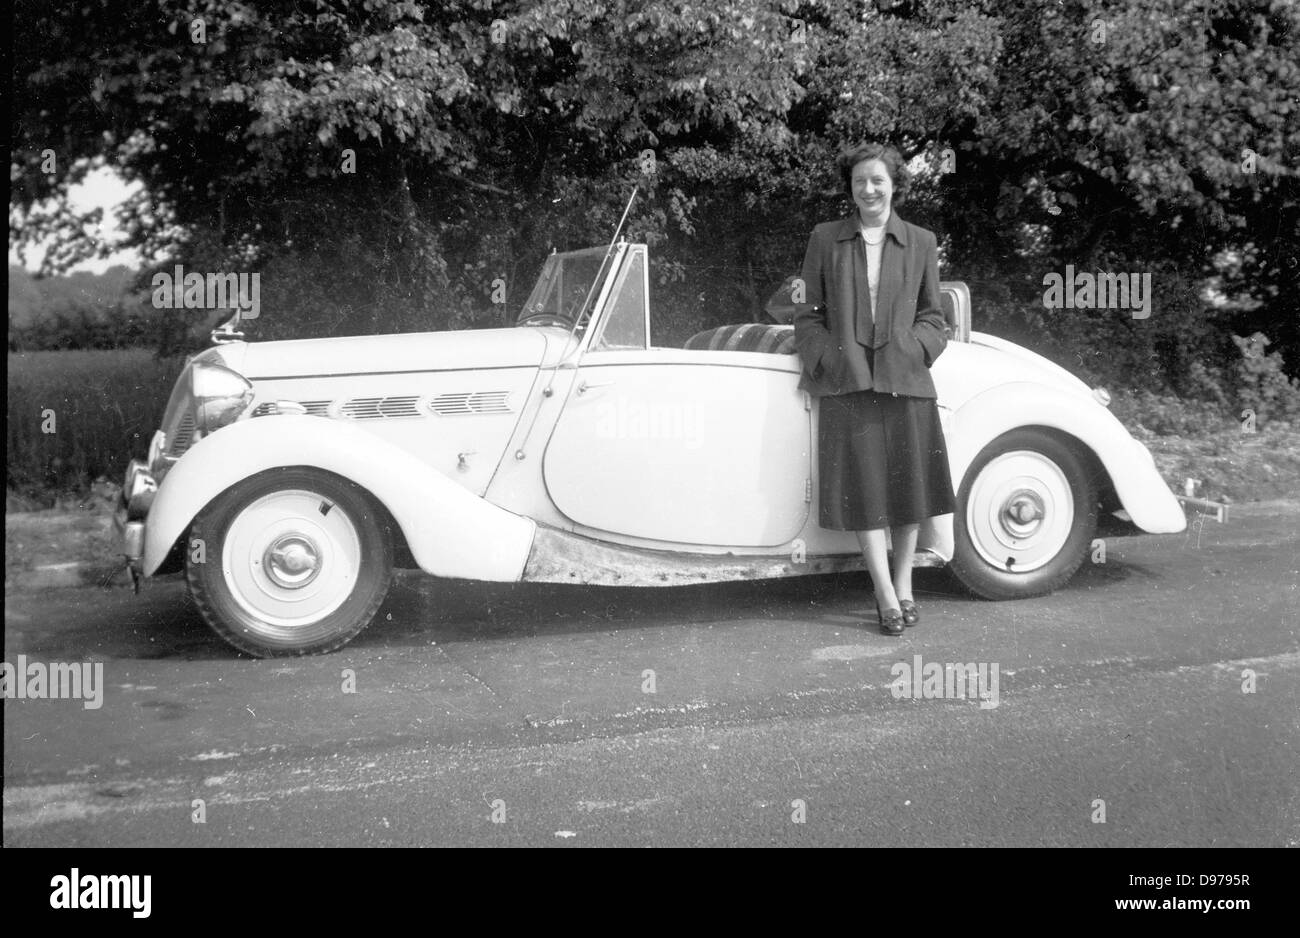 Historisches Bild von der 1950er Jahre. Ländlichen England und Frau posiert stolz für ein Bild mit ihrem Cabrio-Sportwagen am Straßenrand. Stockfoto